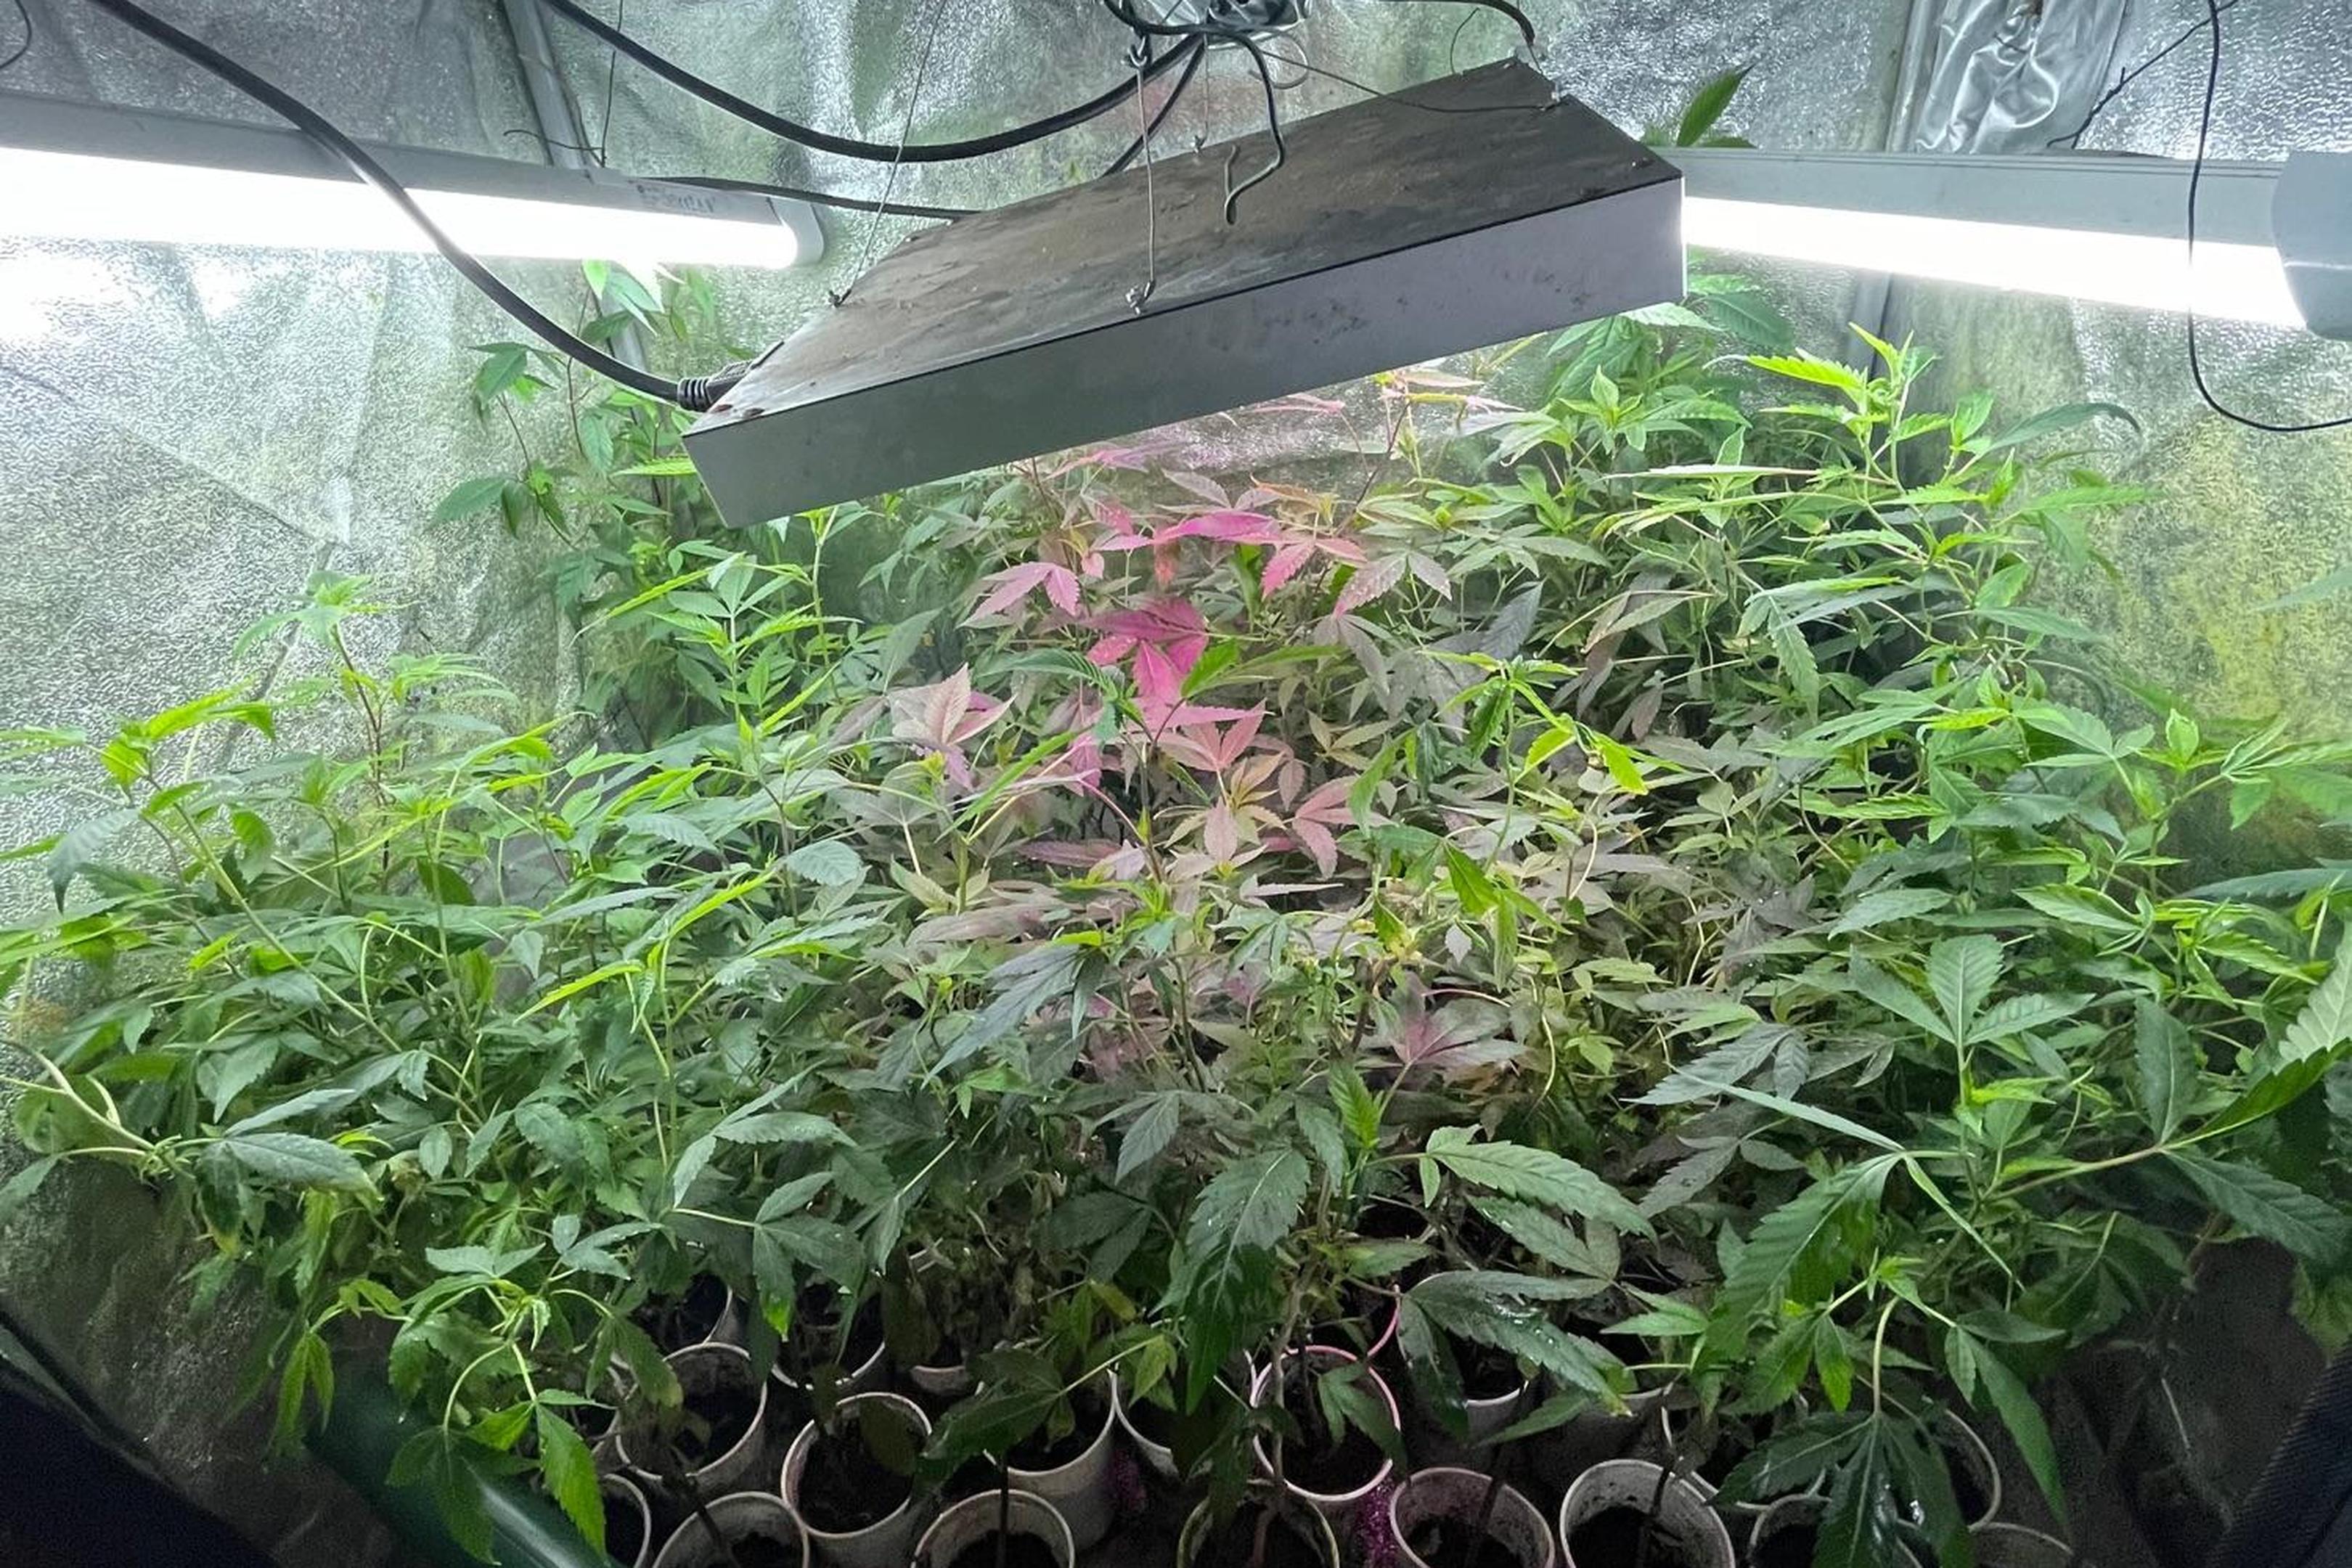 Diese Cannabisplantage hat die Polizei in einer Wohnung am Seffenter Weg in Aachen entdeckt und beschlagnahmt.